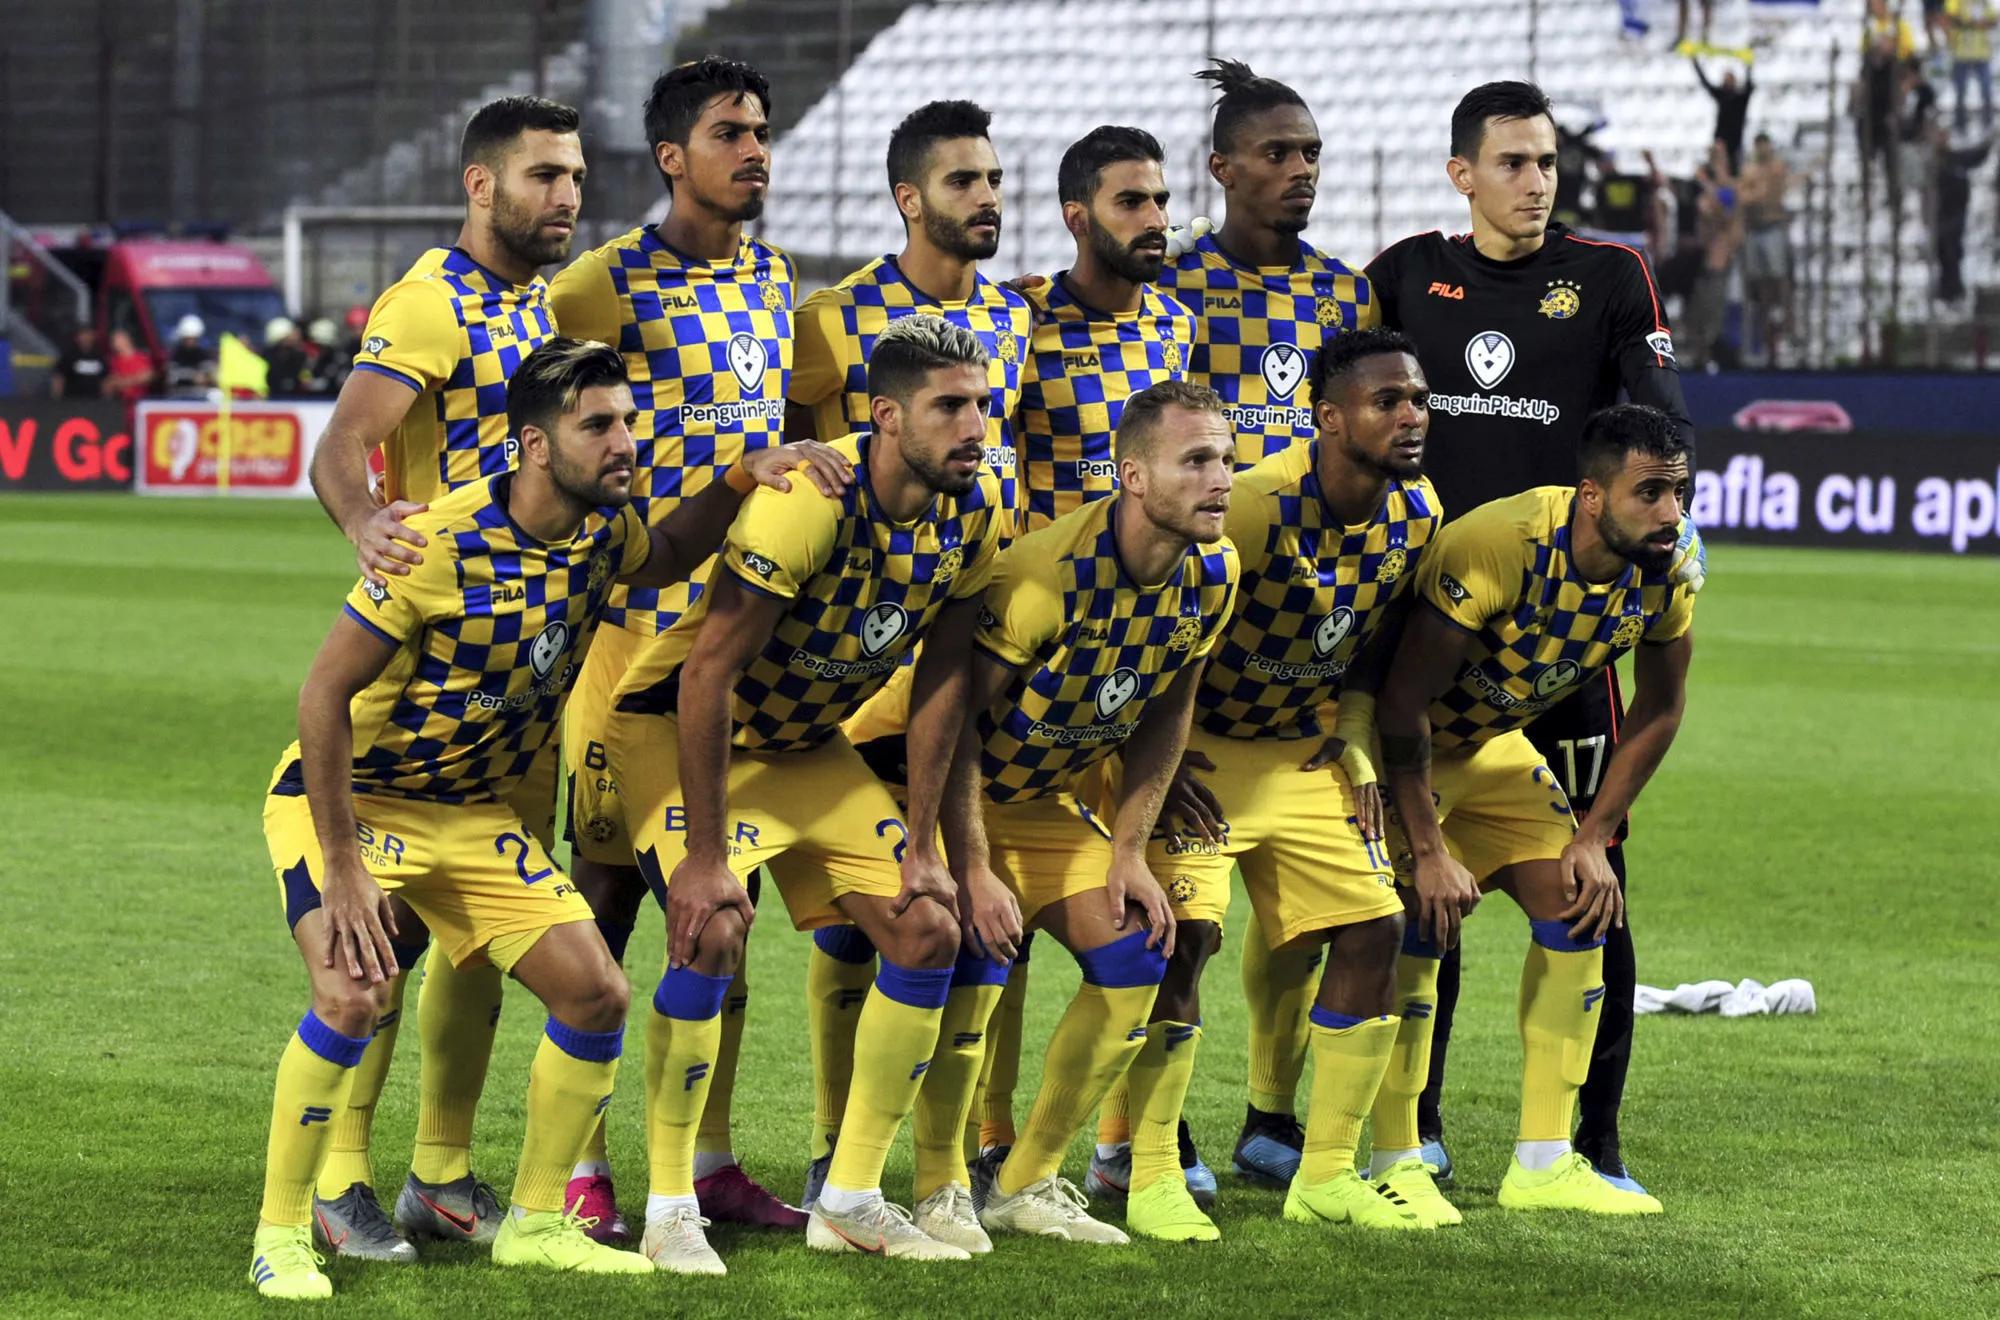 Pronostic Beitar Jerusalem Maccabi Tel Aviv : Analyse, prono et cotes du match de la Ligat d&rsquo;Israël